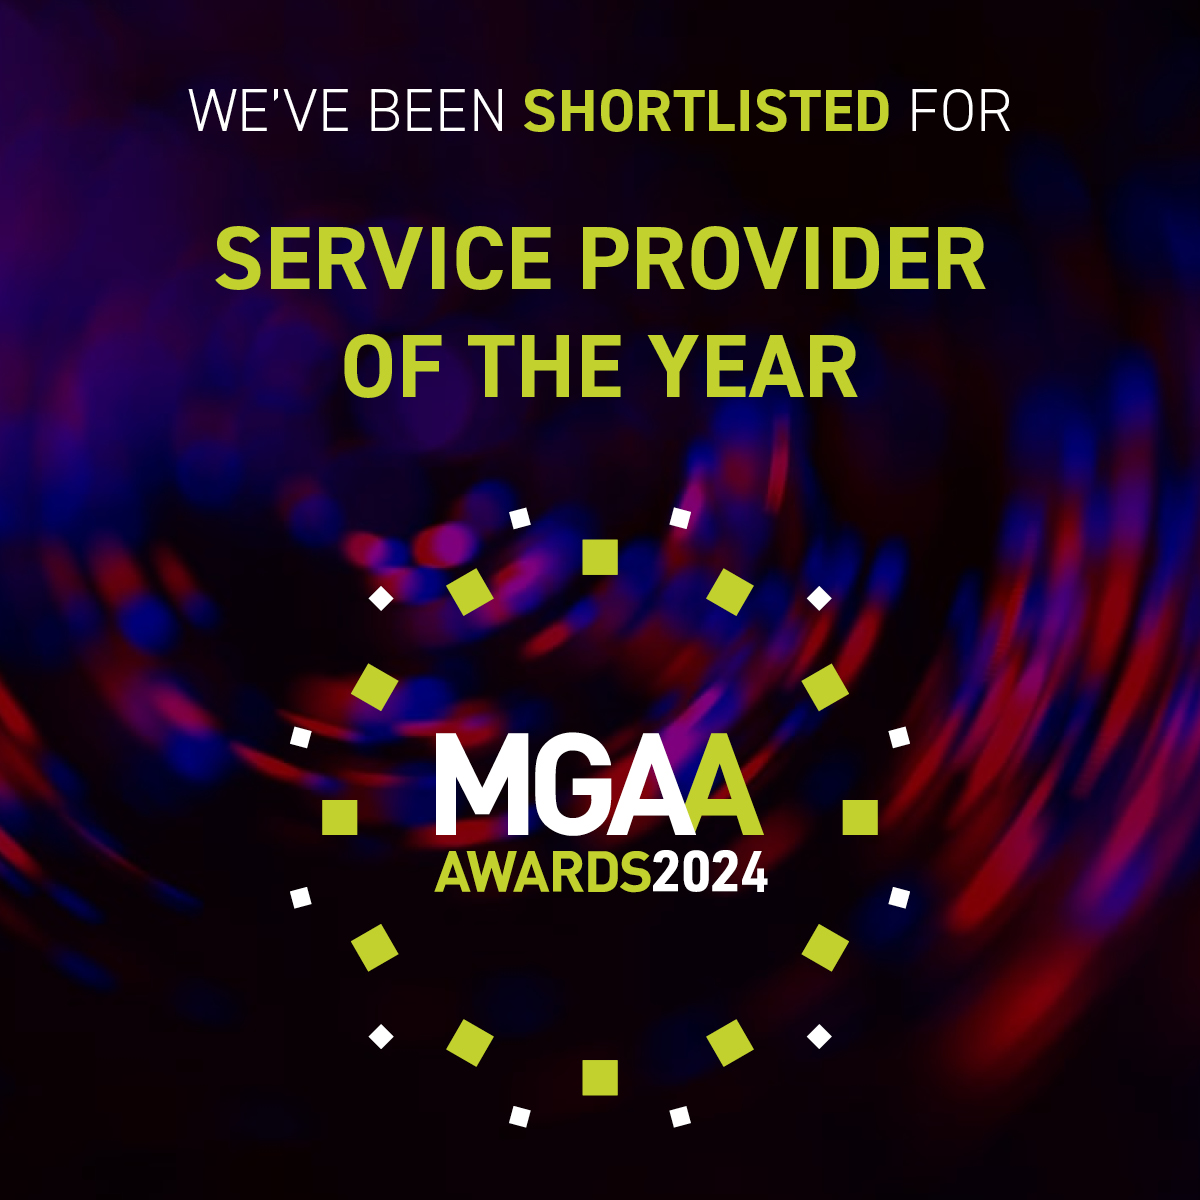 MGAA awards Service Provider